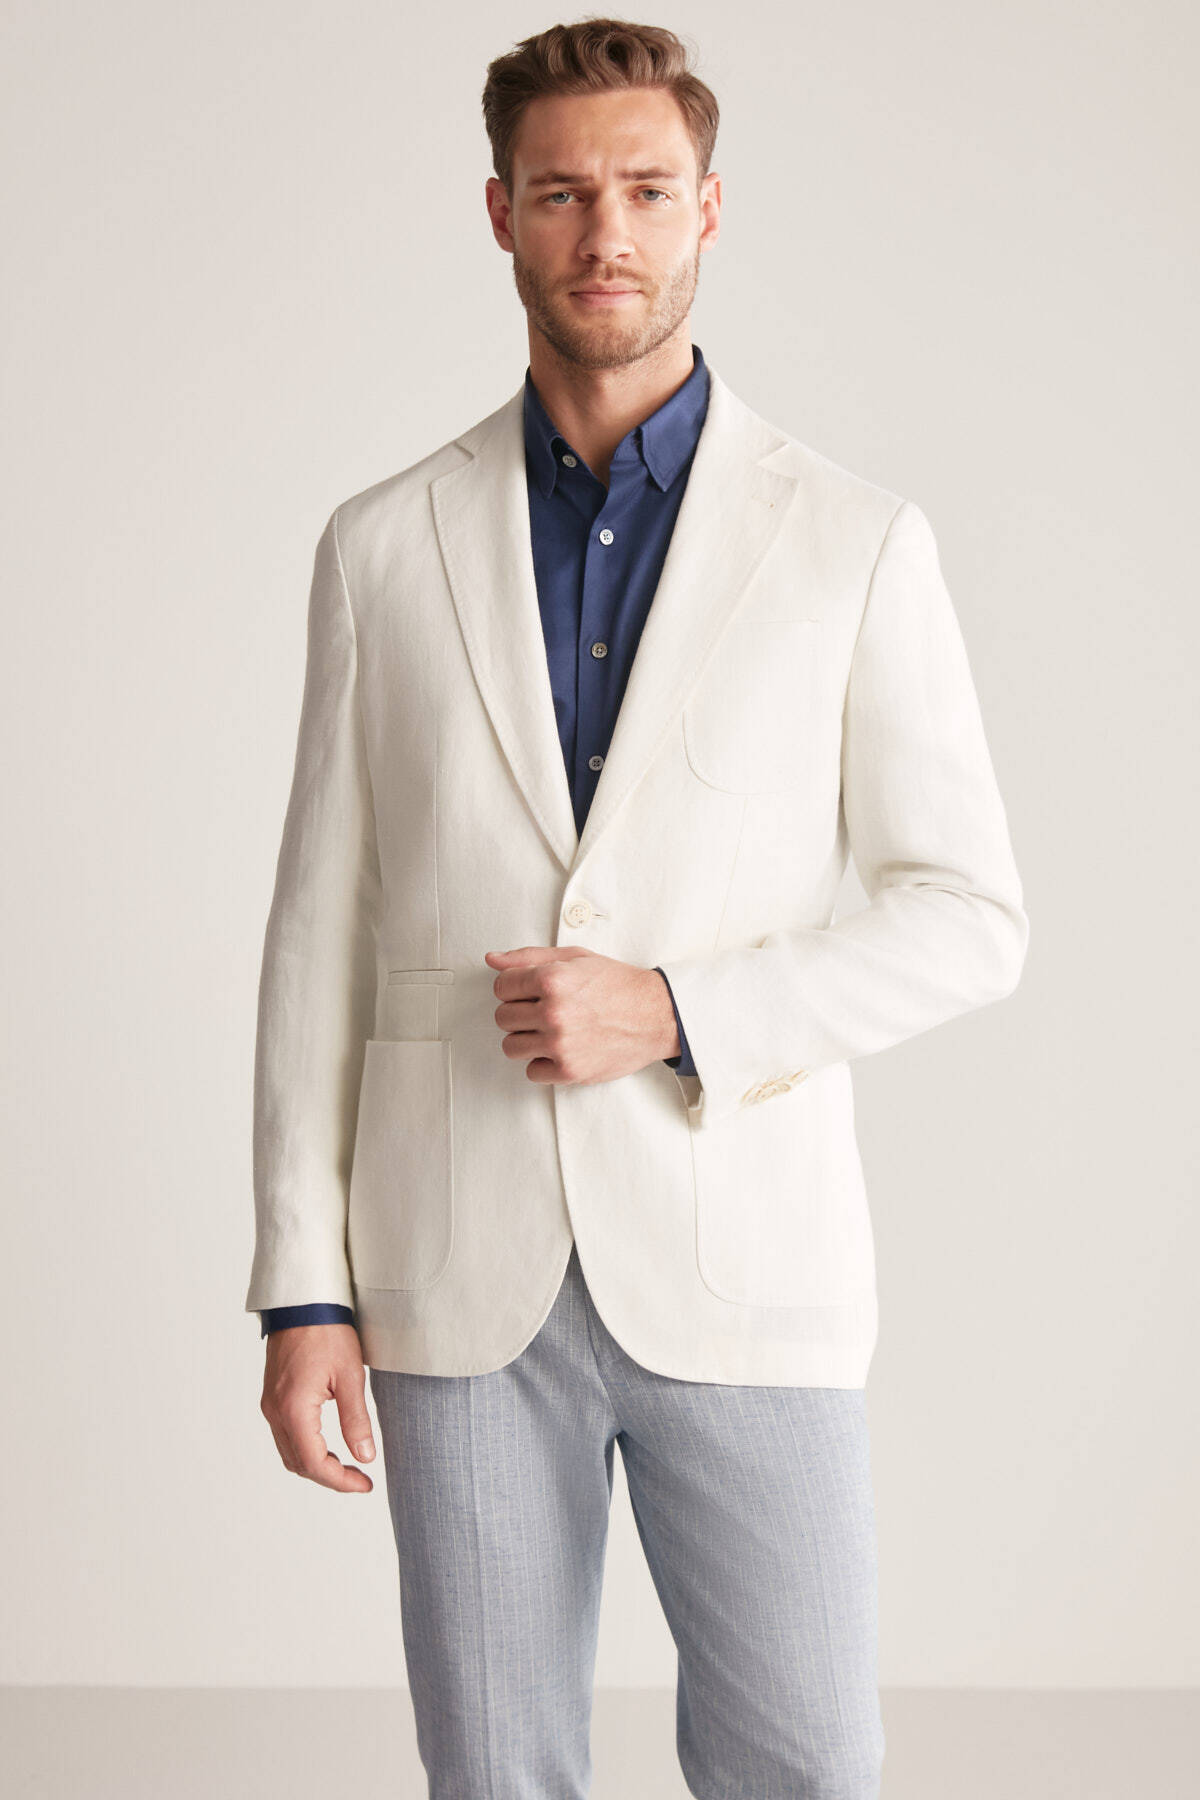 Saf Keten Kırık Beyaz Yazlık Blazer Ceket